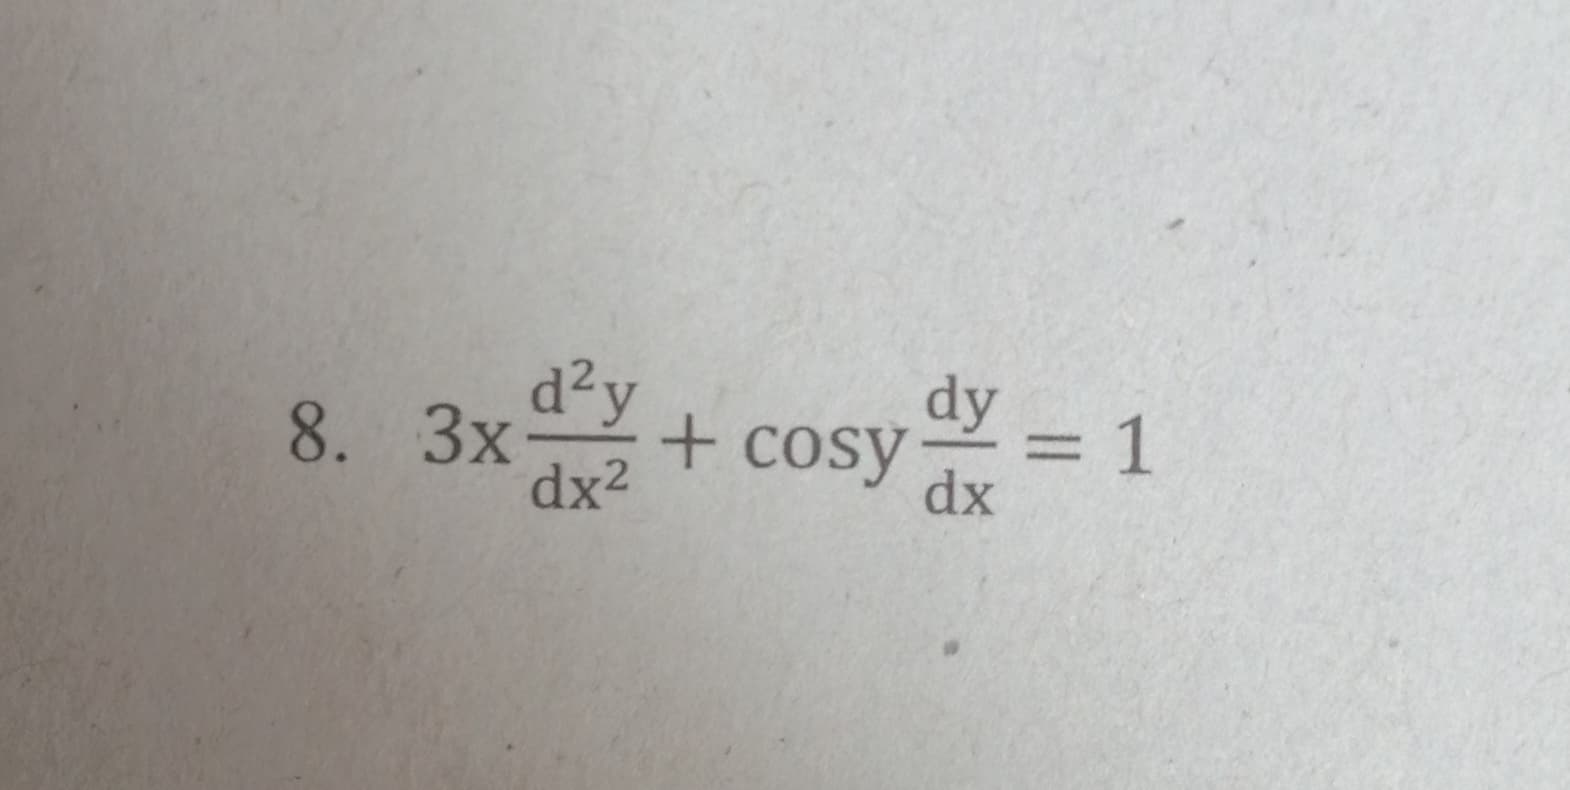 d²y
3x
dx2
dy
+ cosy:
3D1
dx
